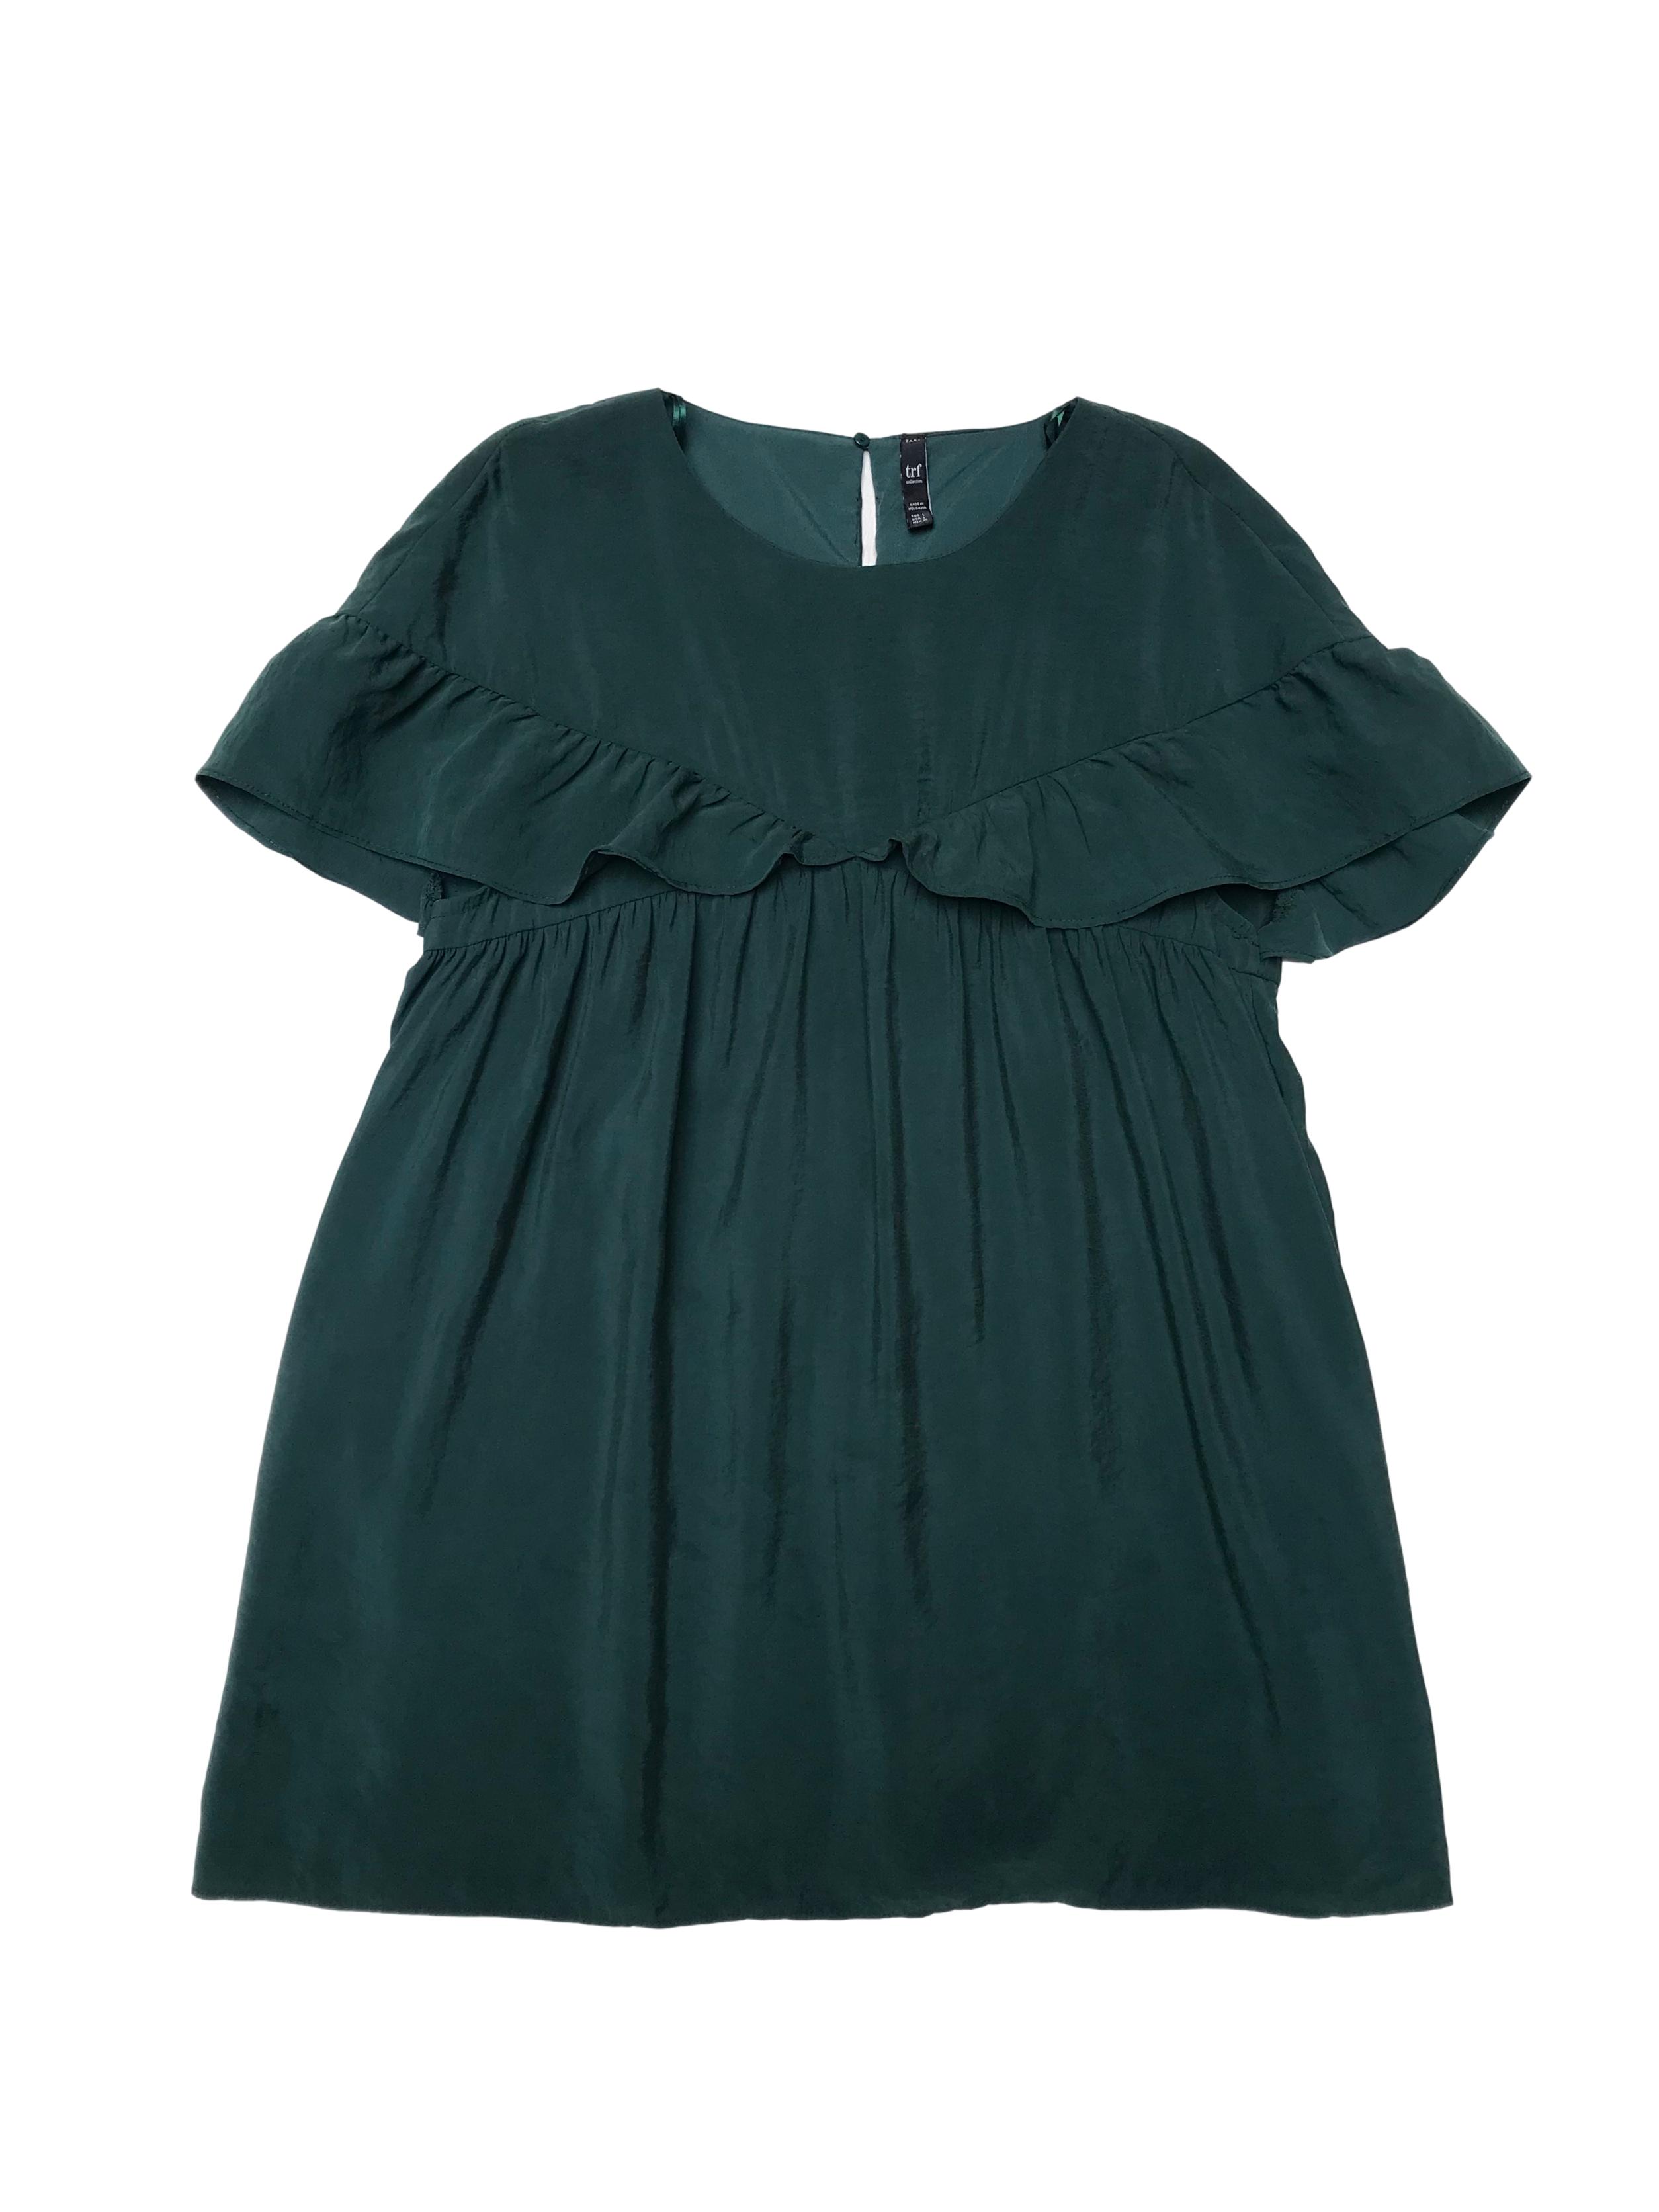 Vestido Zara verde de modal efecto lavado con volantes, cierre y botón posterior, lleva forro tipo enterizo short. Busto 100cm Largo 82cm